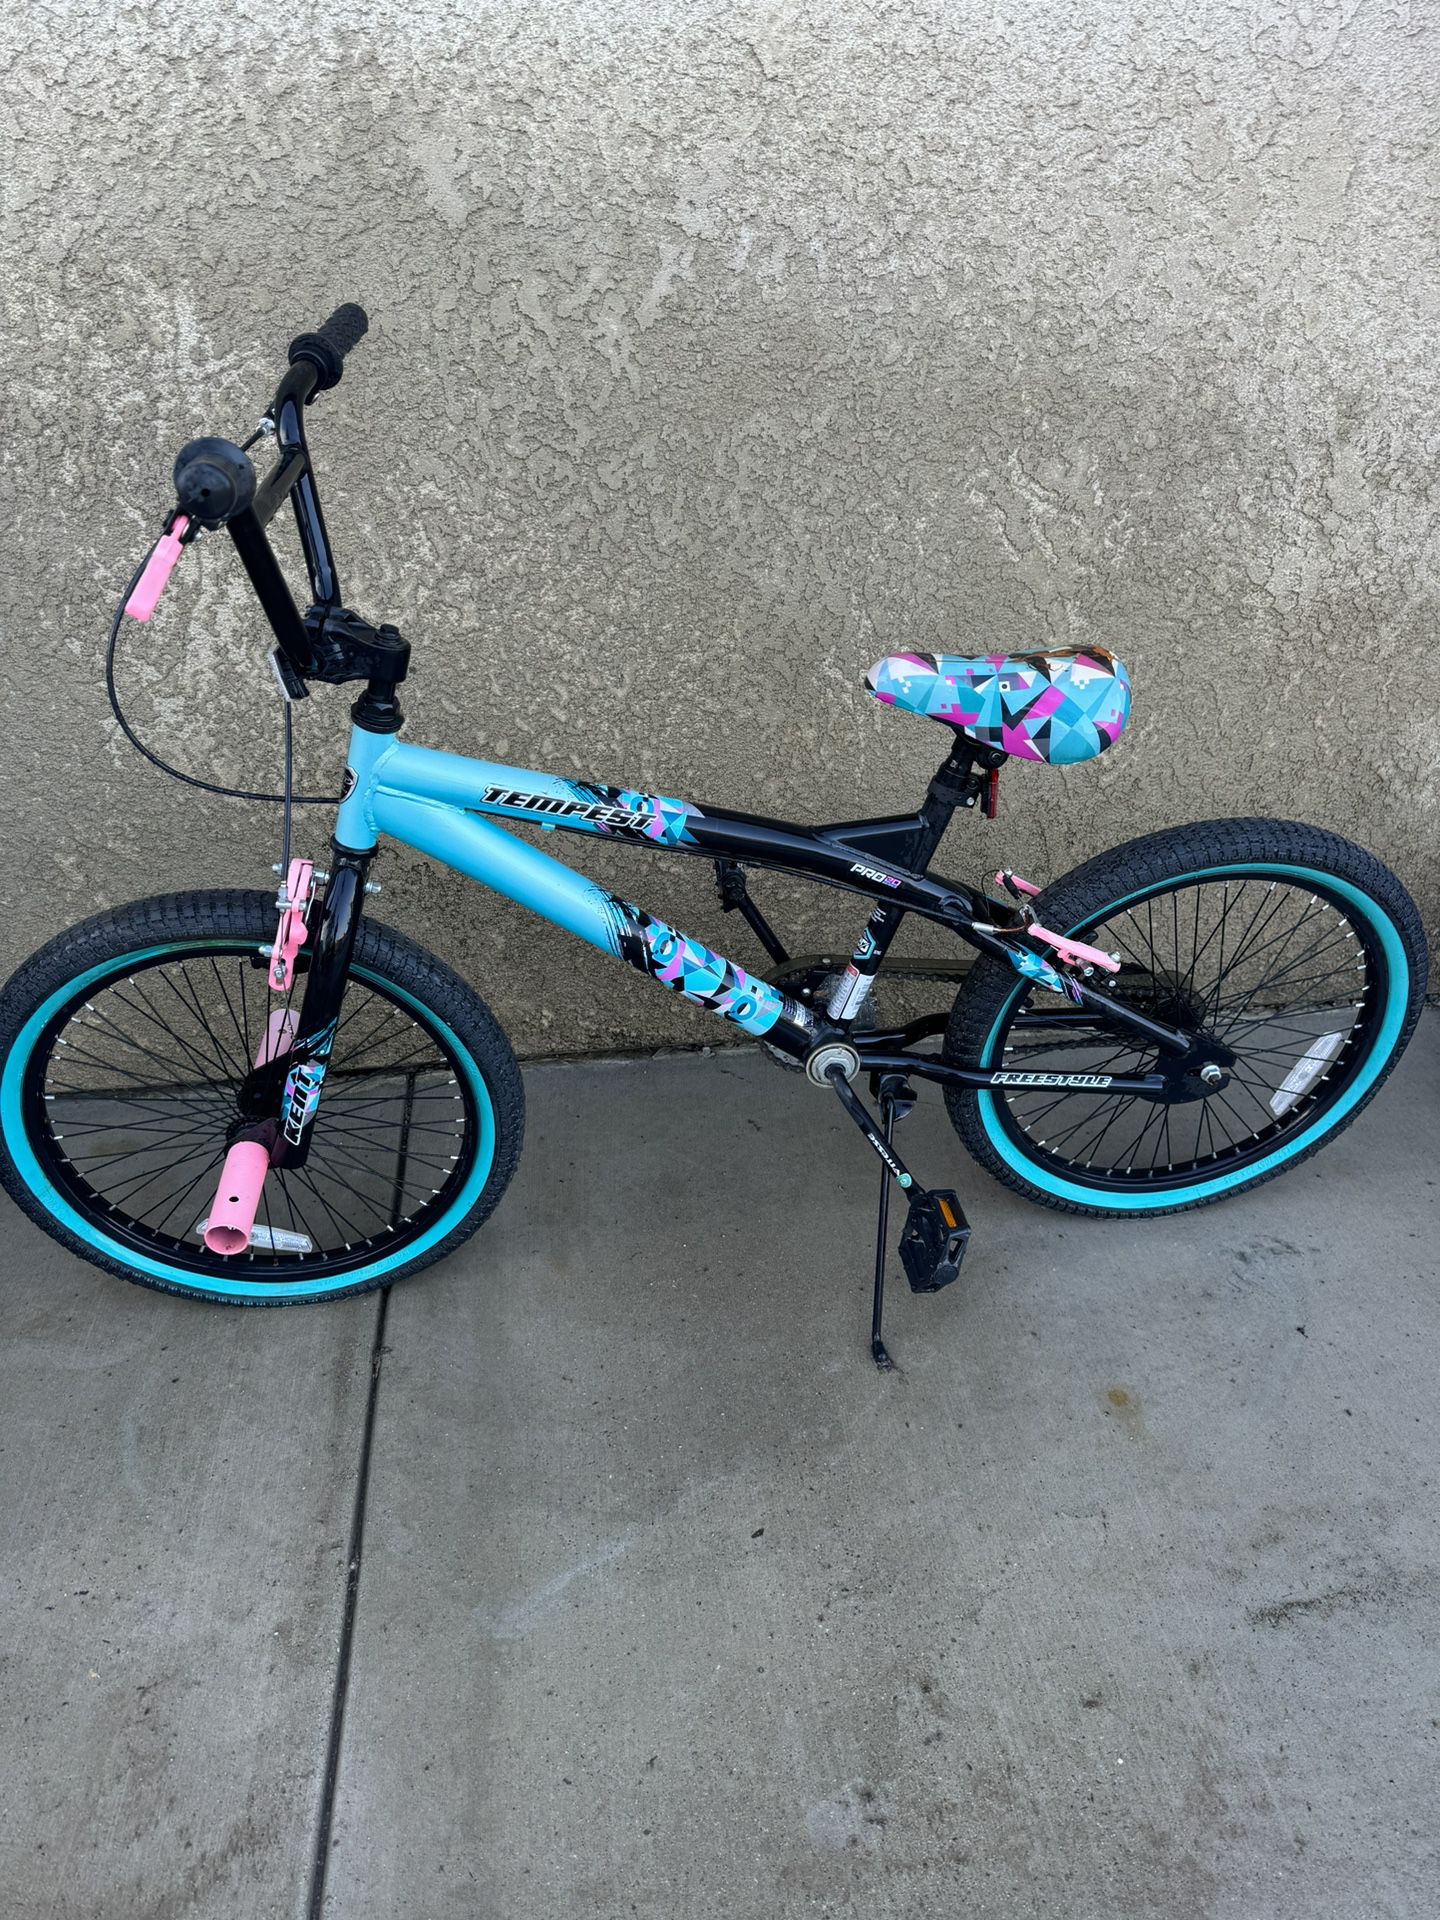 Girls 20 “ Kent Tempest Bike $70 obo